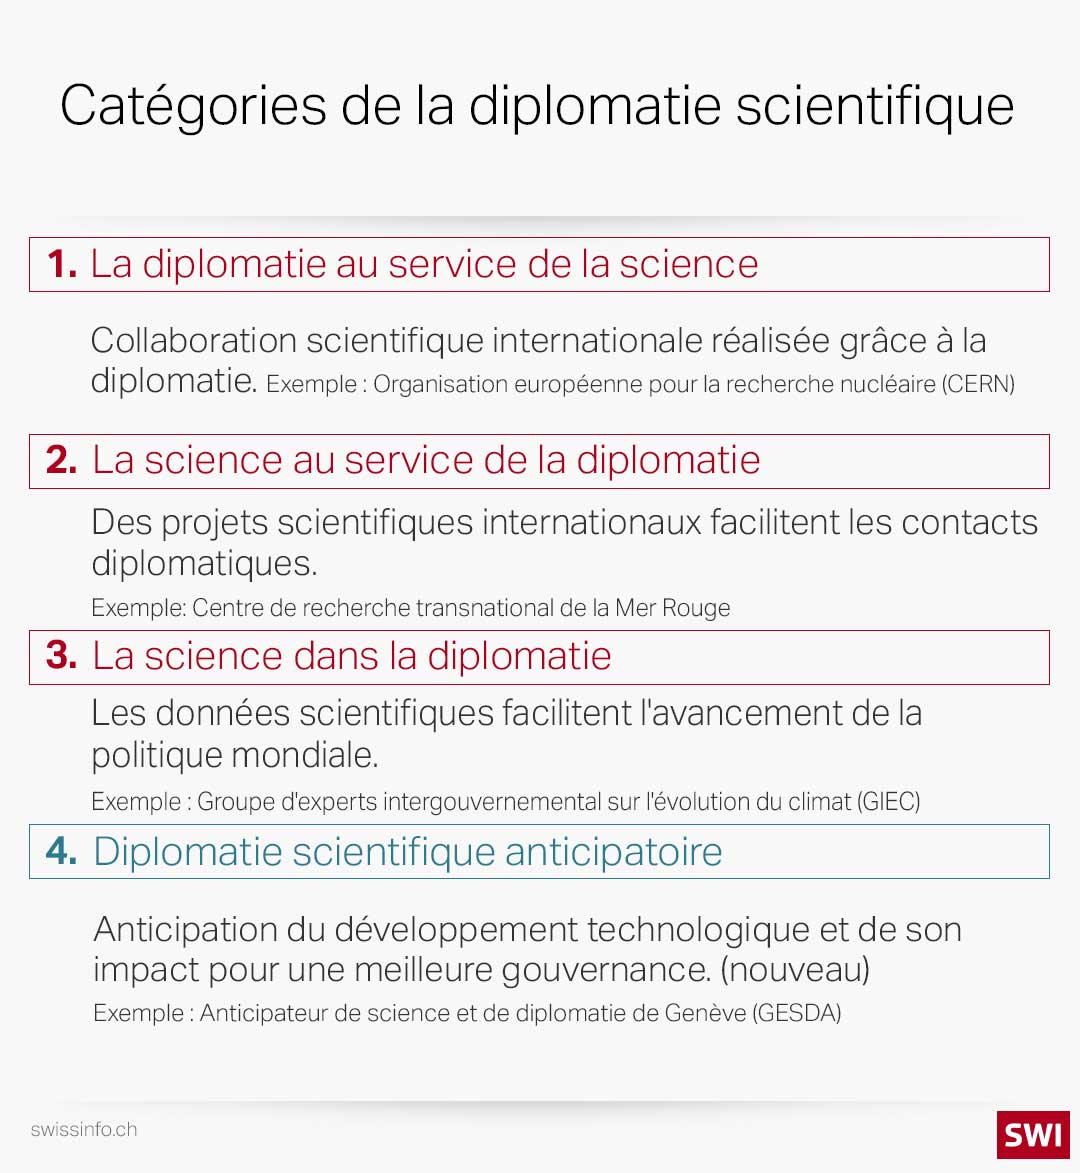 Catégories de la diplomatie scientifique